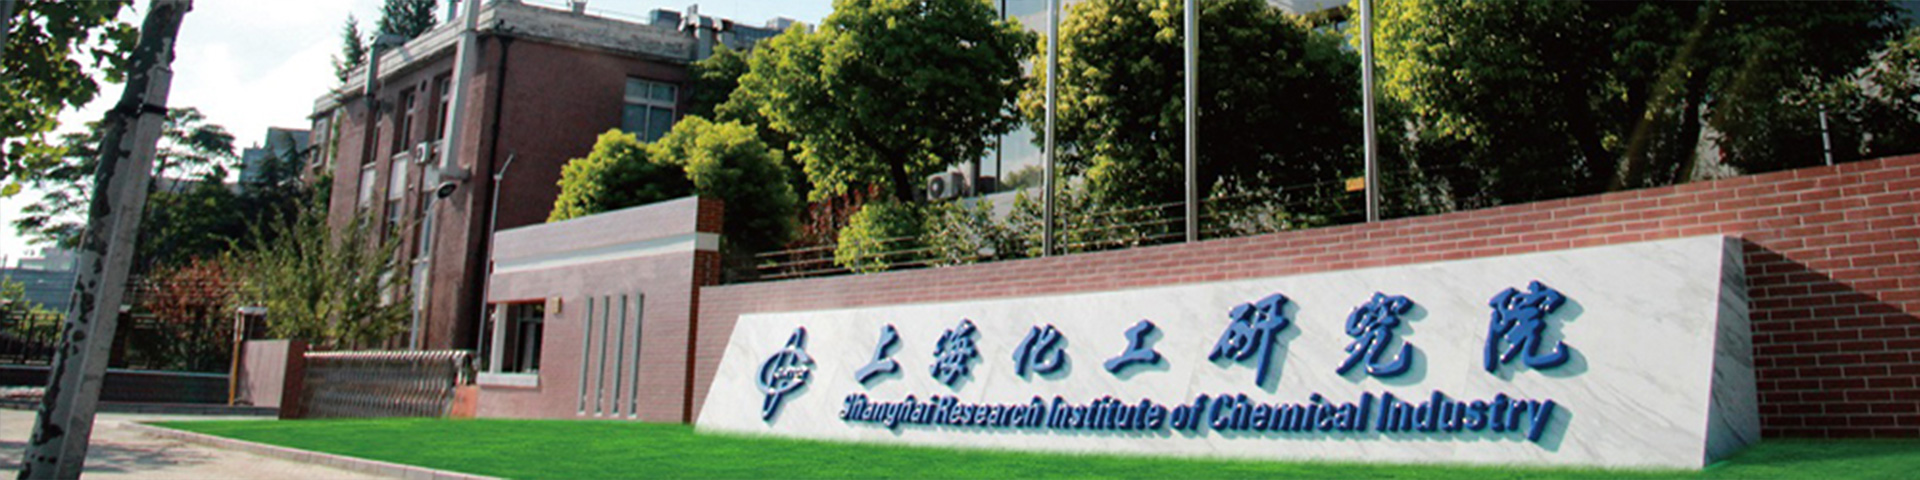 上海化工研究院-推薦產品